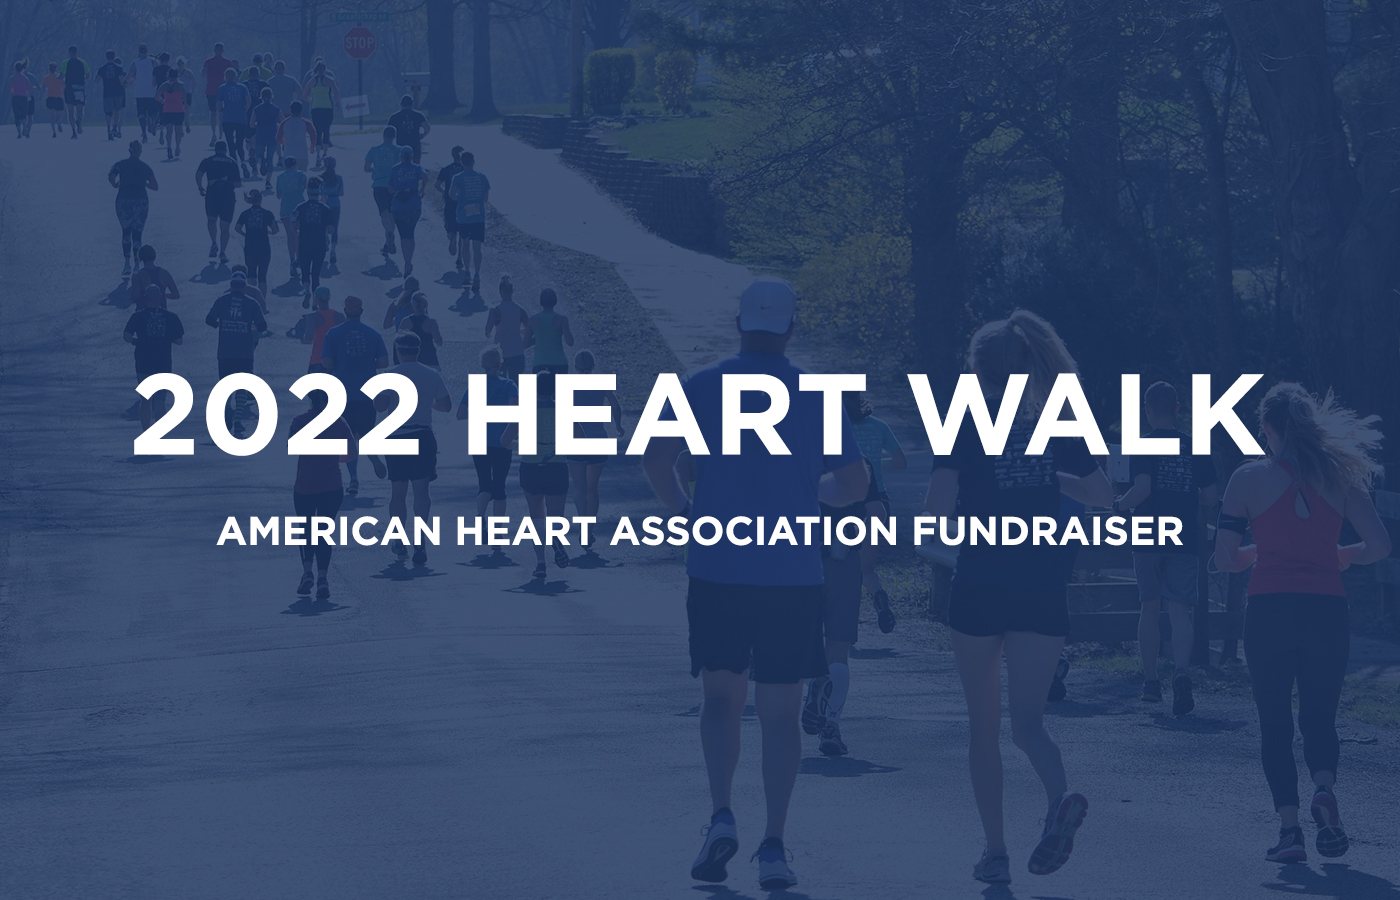 2022 Heart Walk Fundraiser [American Heart Association]